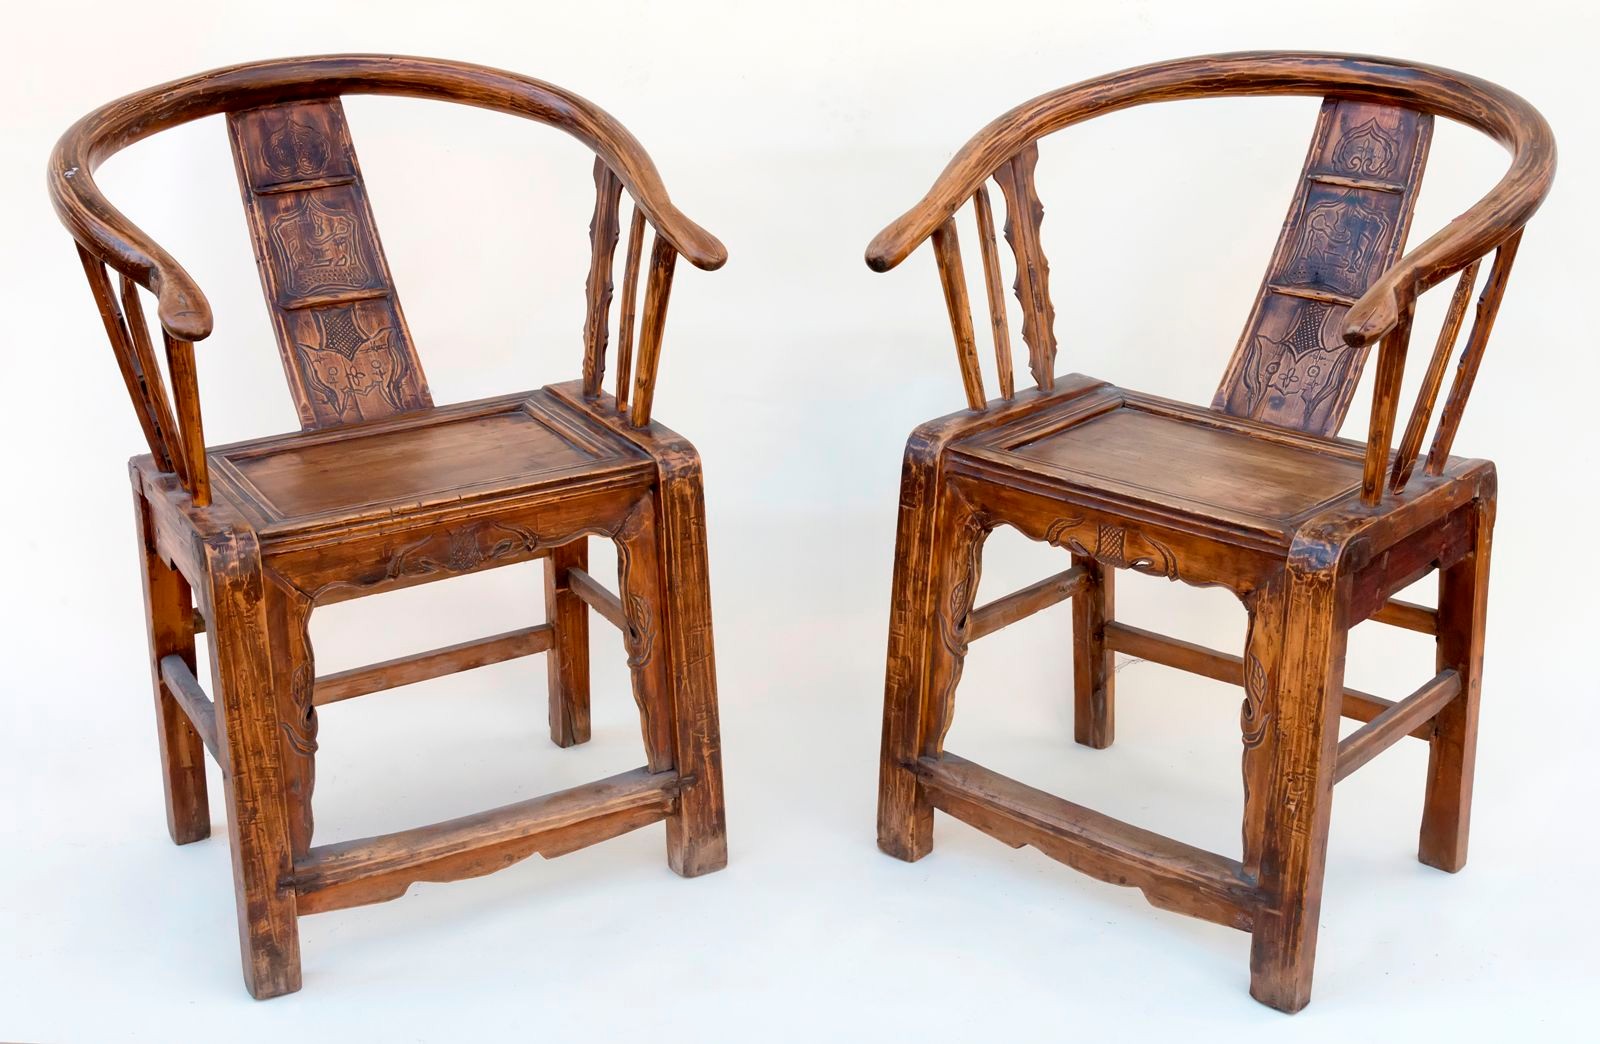 Tradiční čínské židle s opěradlem ve tvaru podkovy (Chinese Horseshoe Chairs)– párové